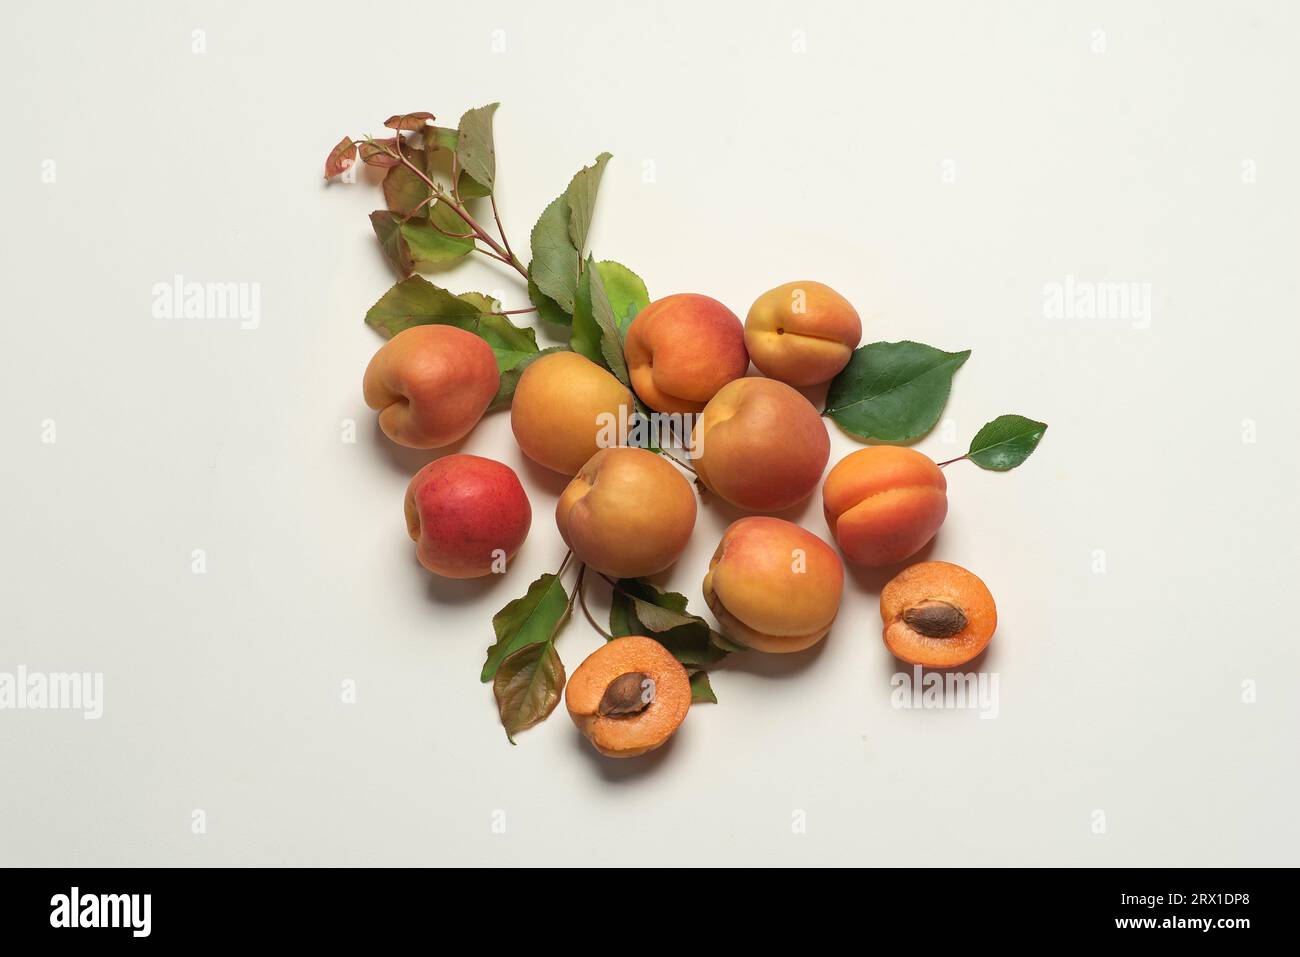 Abricots frais, mûrs et juteux sur fond blanc. Fruits entiers, avec feuilles, moitiés d'abricot Banque D'Images